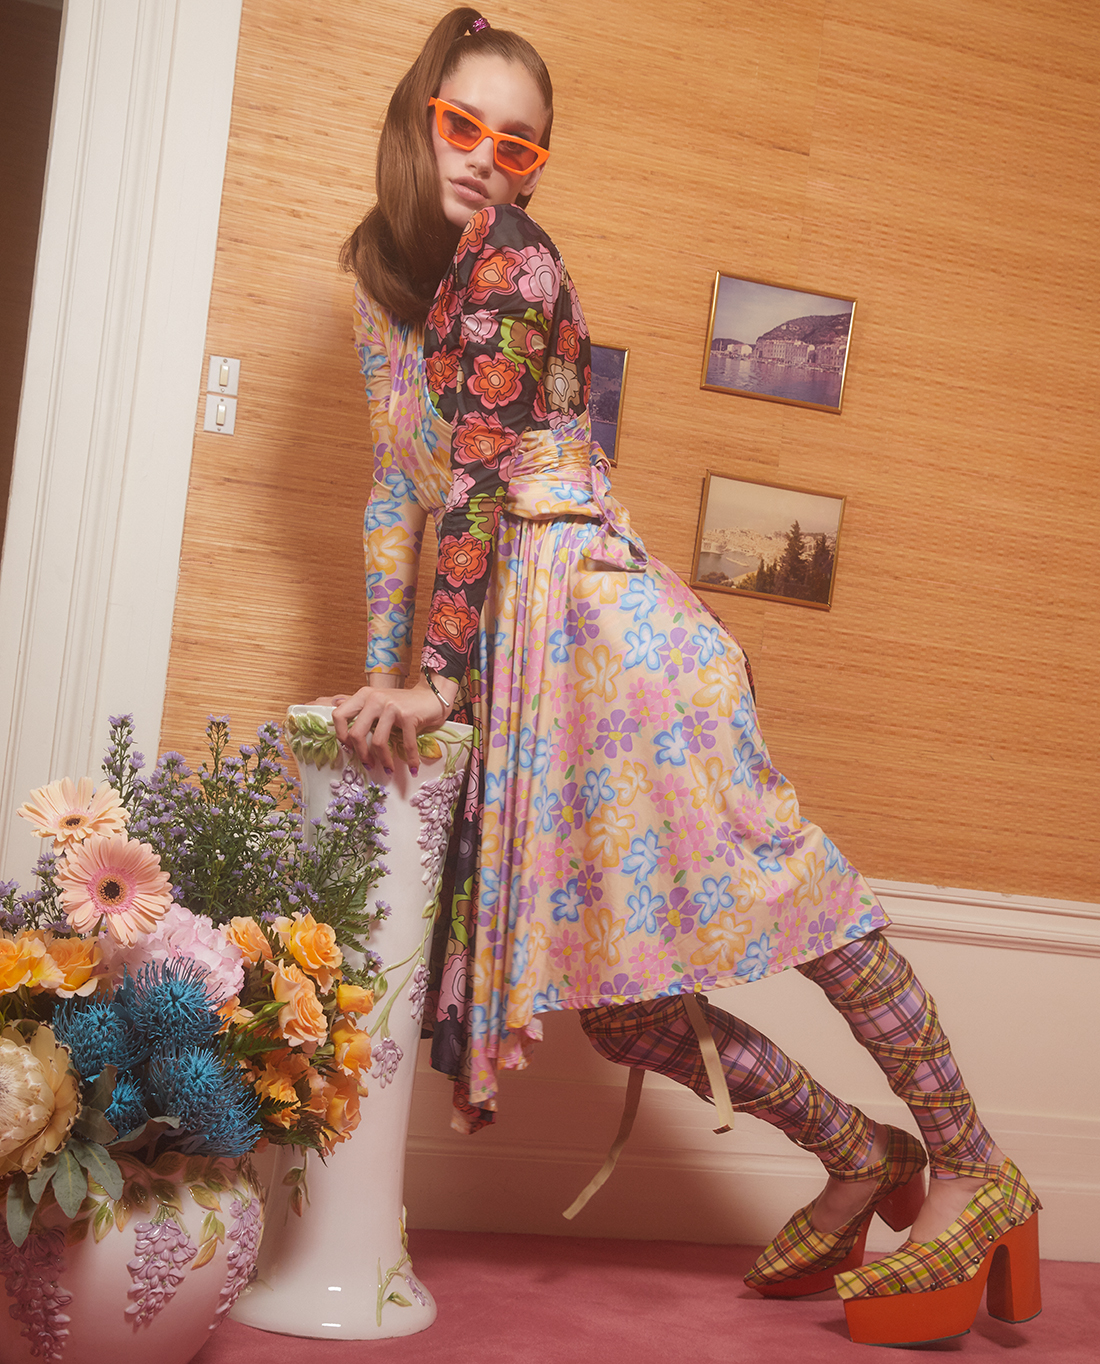 femme habillé 1960 avec des motifs et des couleurs pastels dans un salon